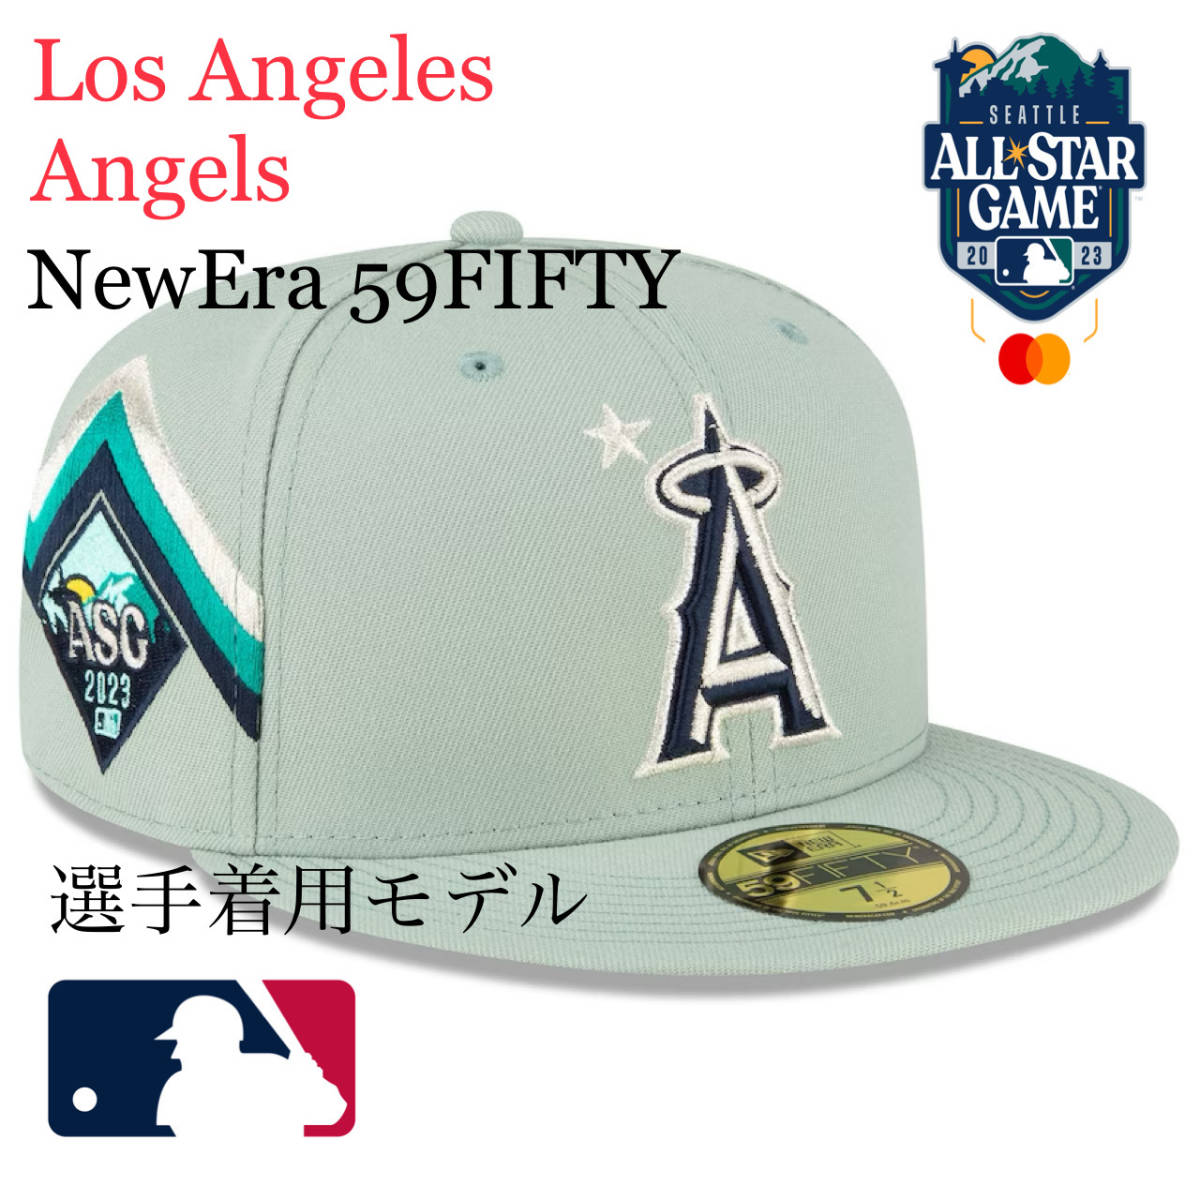 MLB 2023 オールスターゲーム ロサンゼルス エンゼルス ニューエラ 59 fifty キャップ 帽子 7 1/4 57.7cm NEW